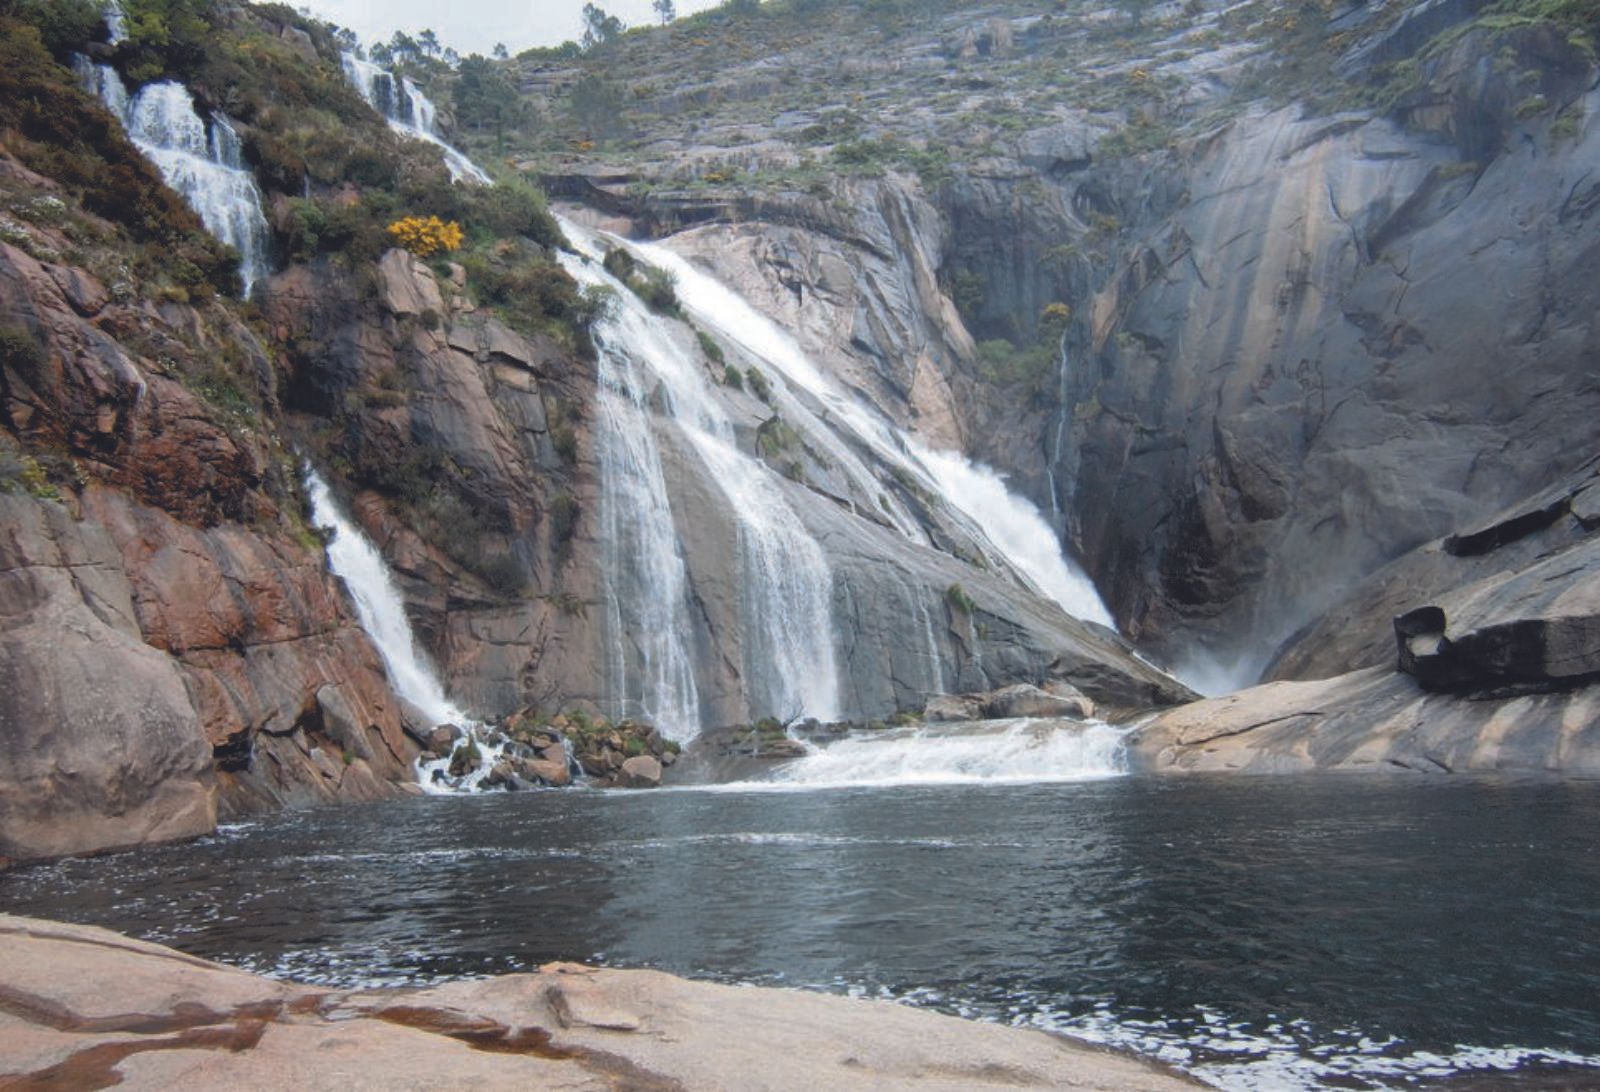 La singular cascada del Ézaro, probablemente la más turística y visitada de Galicia.